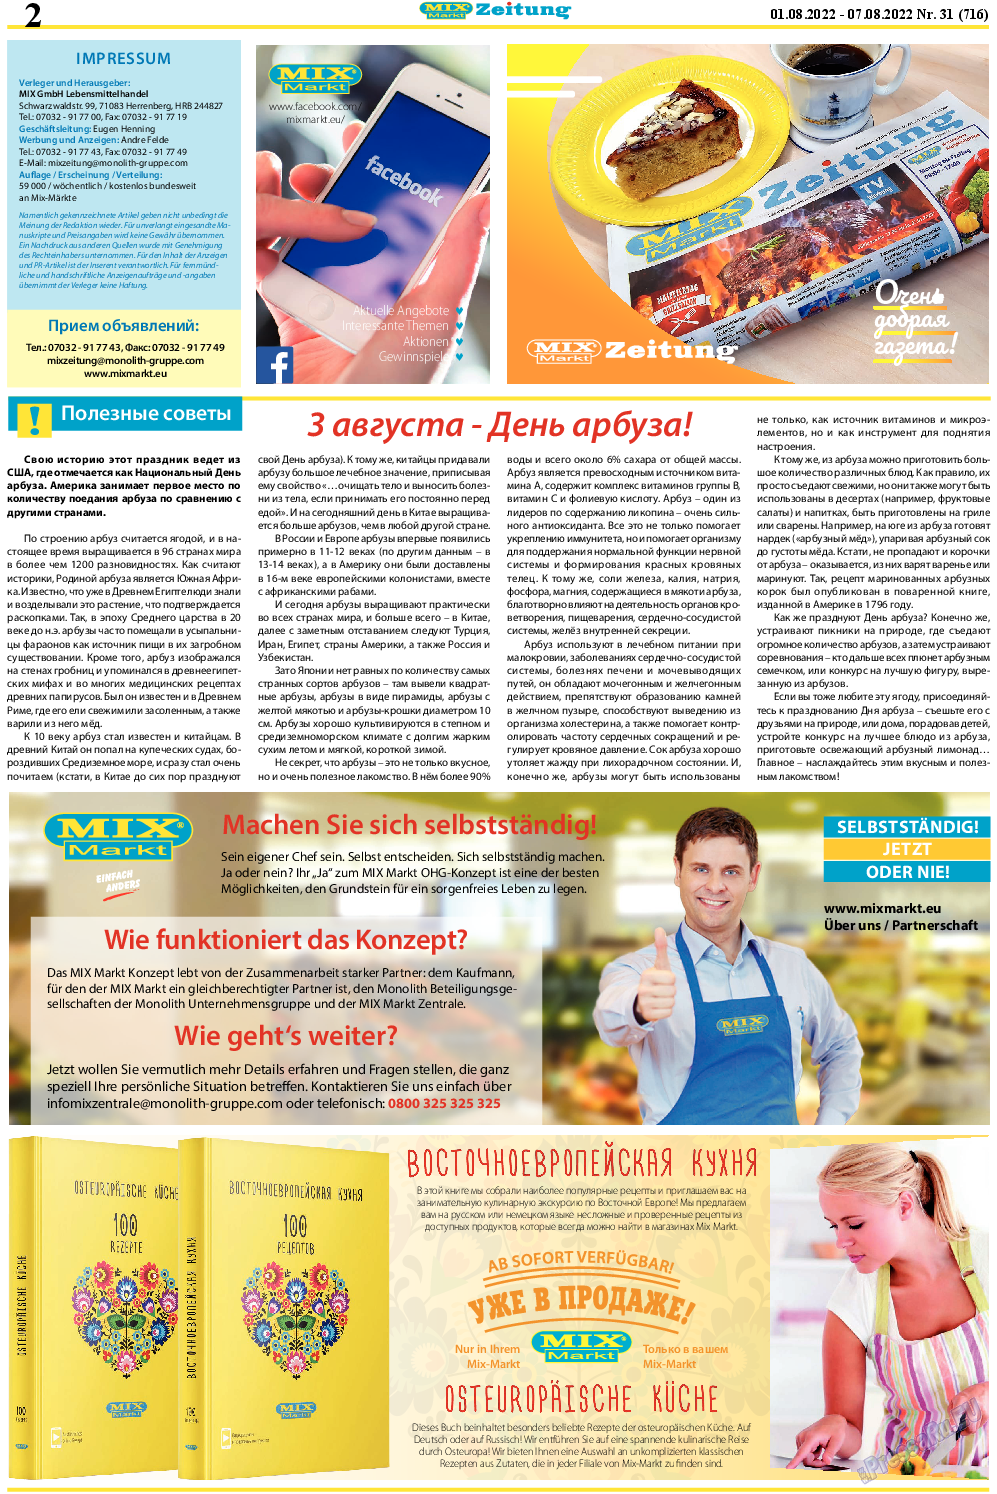 MIX-Markt Zeitung, газета. 2022 №31 стр.2